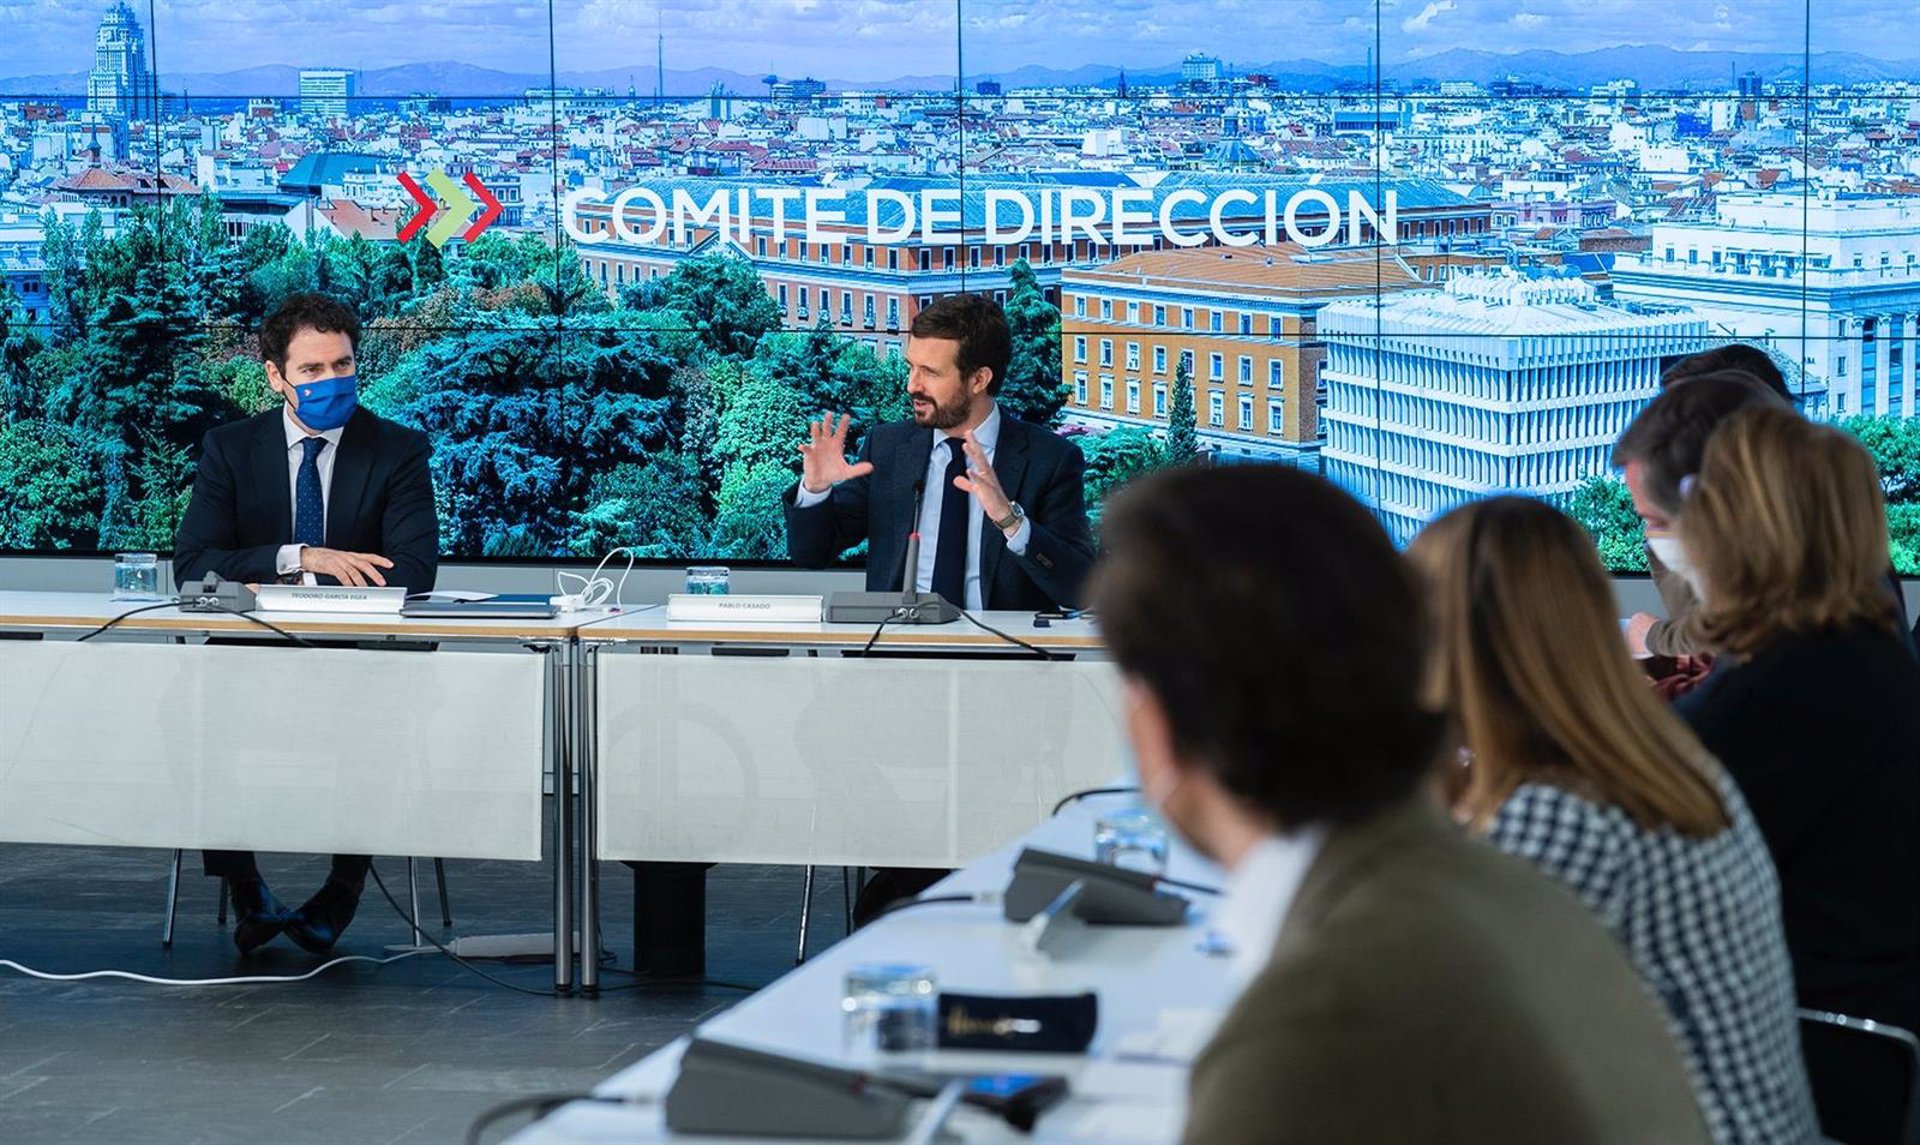 26-02-2021 El líder del PP, Pablo Casado, reúne al comité de dirección del PP para explicar los escollos de la negociación con el PSOE para renovar el CGPJ. En Madrid, a 26 de febrero de 2021.
EUROPA ESPAÑA POLÍTICA
DAVID MUDARRA (PP) | 